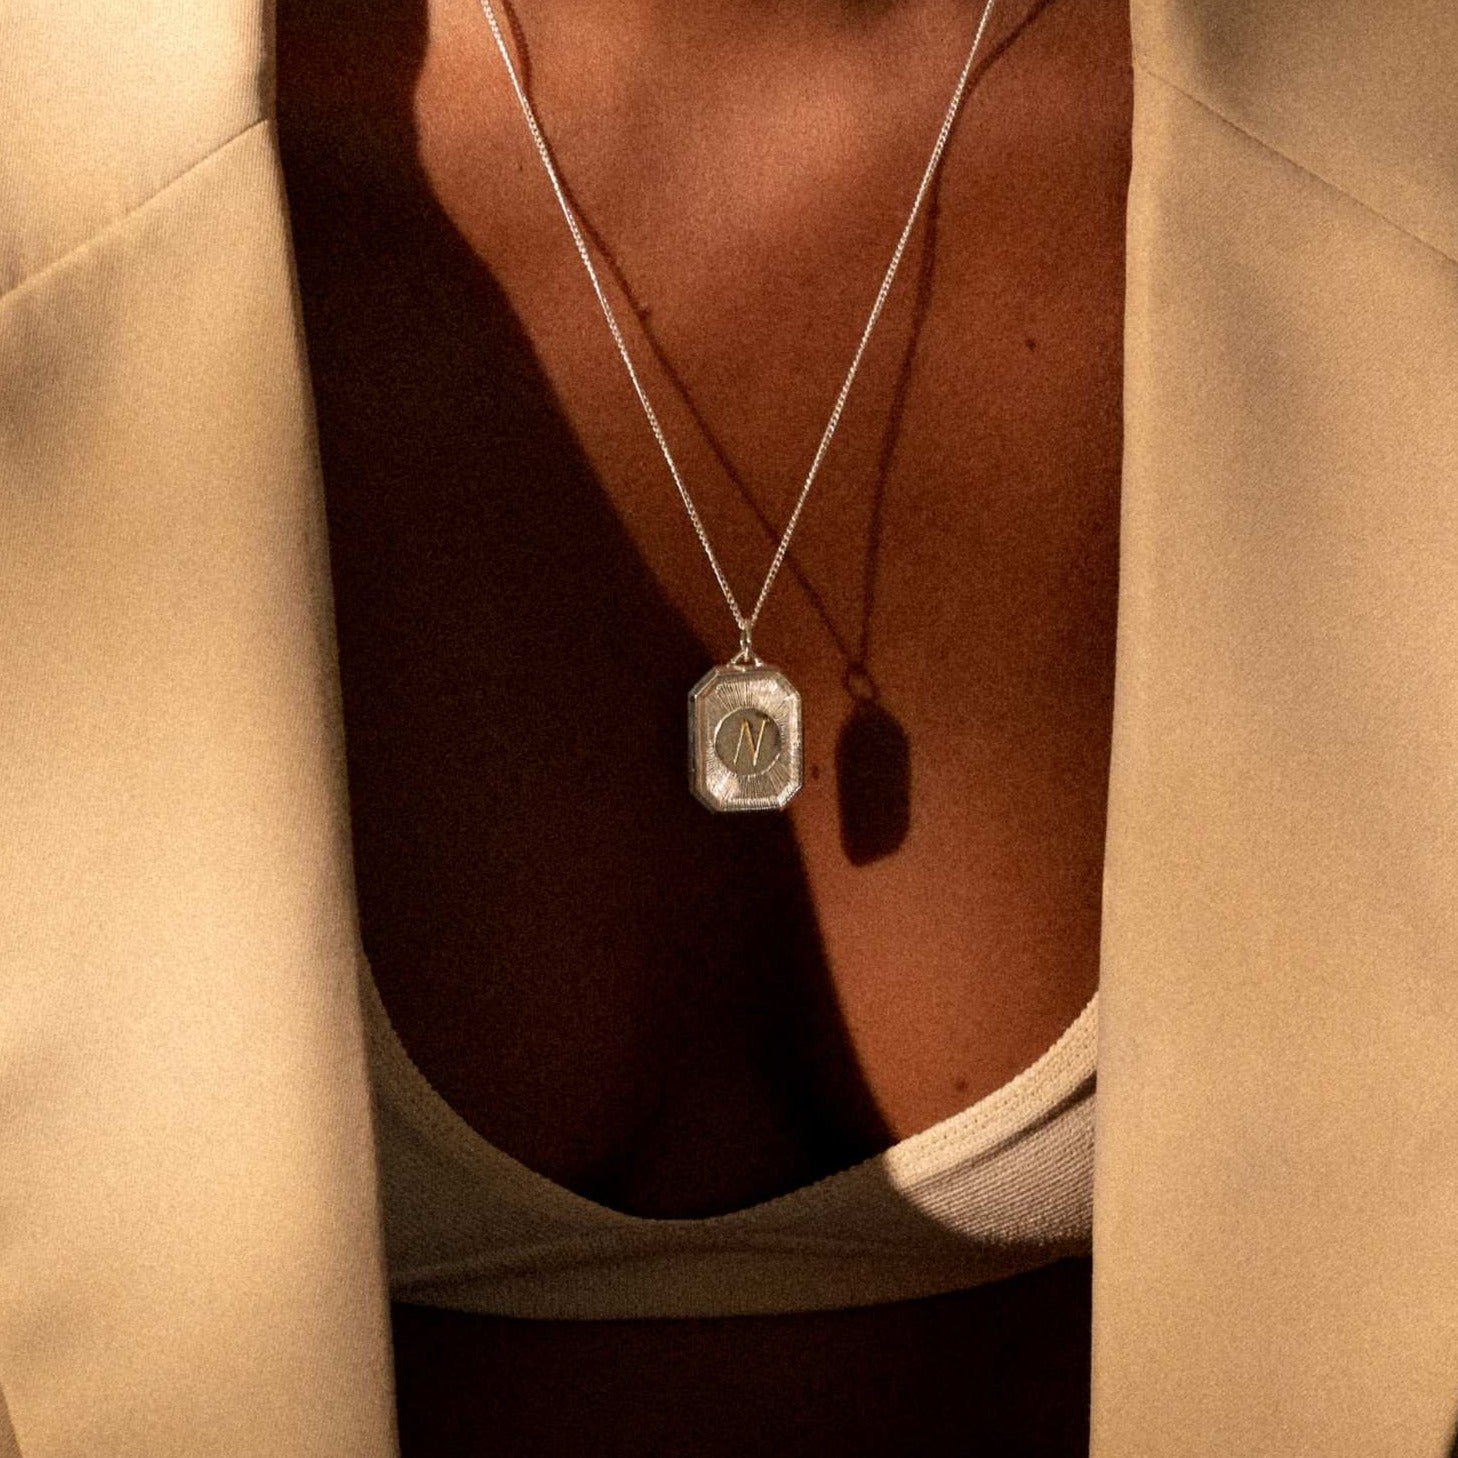 Beloved Necklace / silver